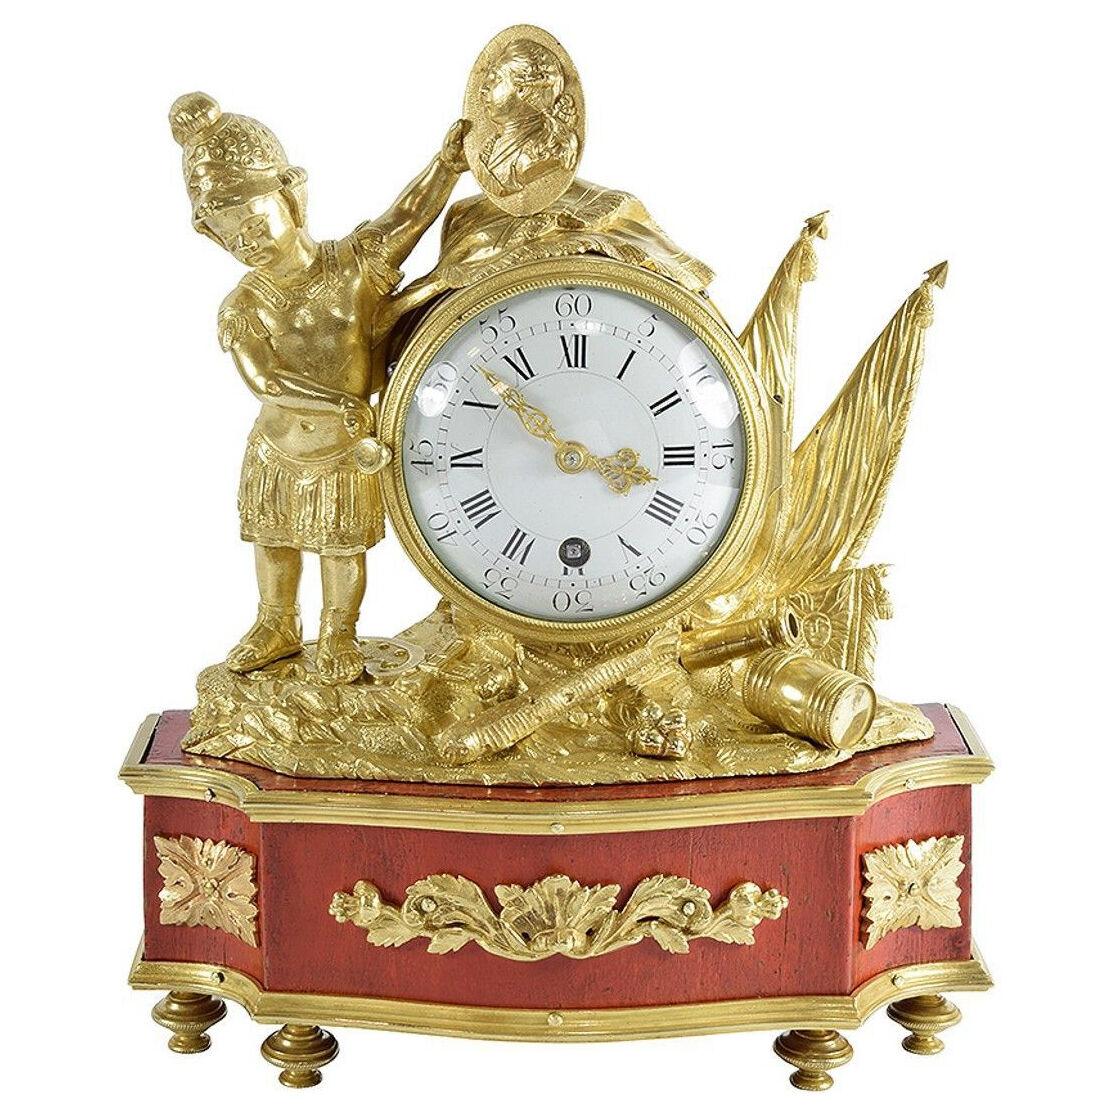 A rare 18th century Louis XVI period small clock